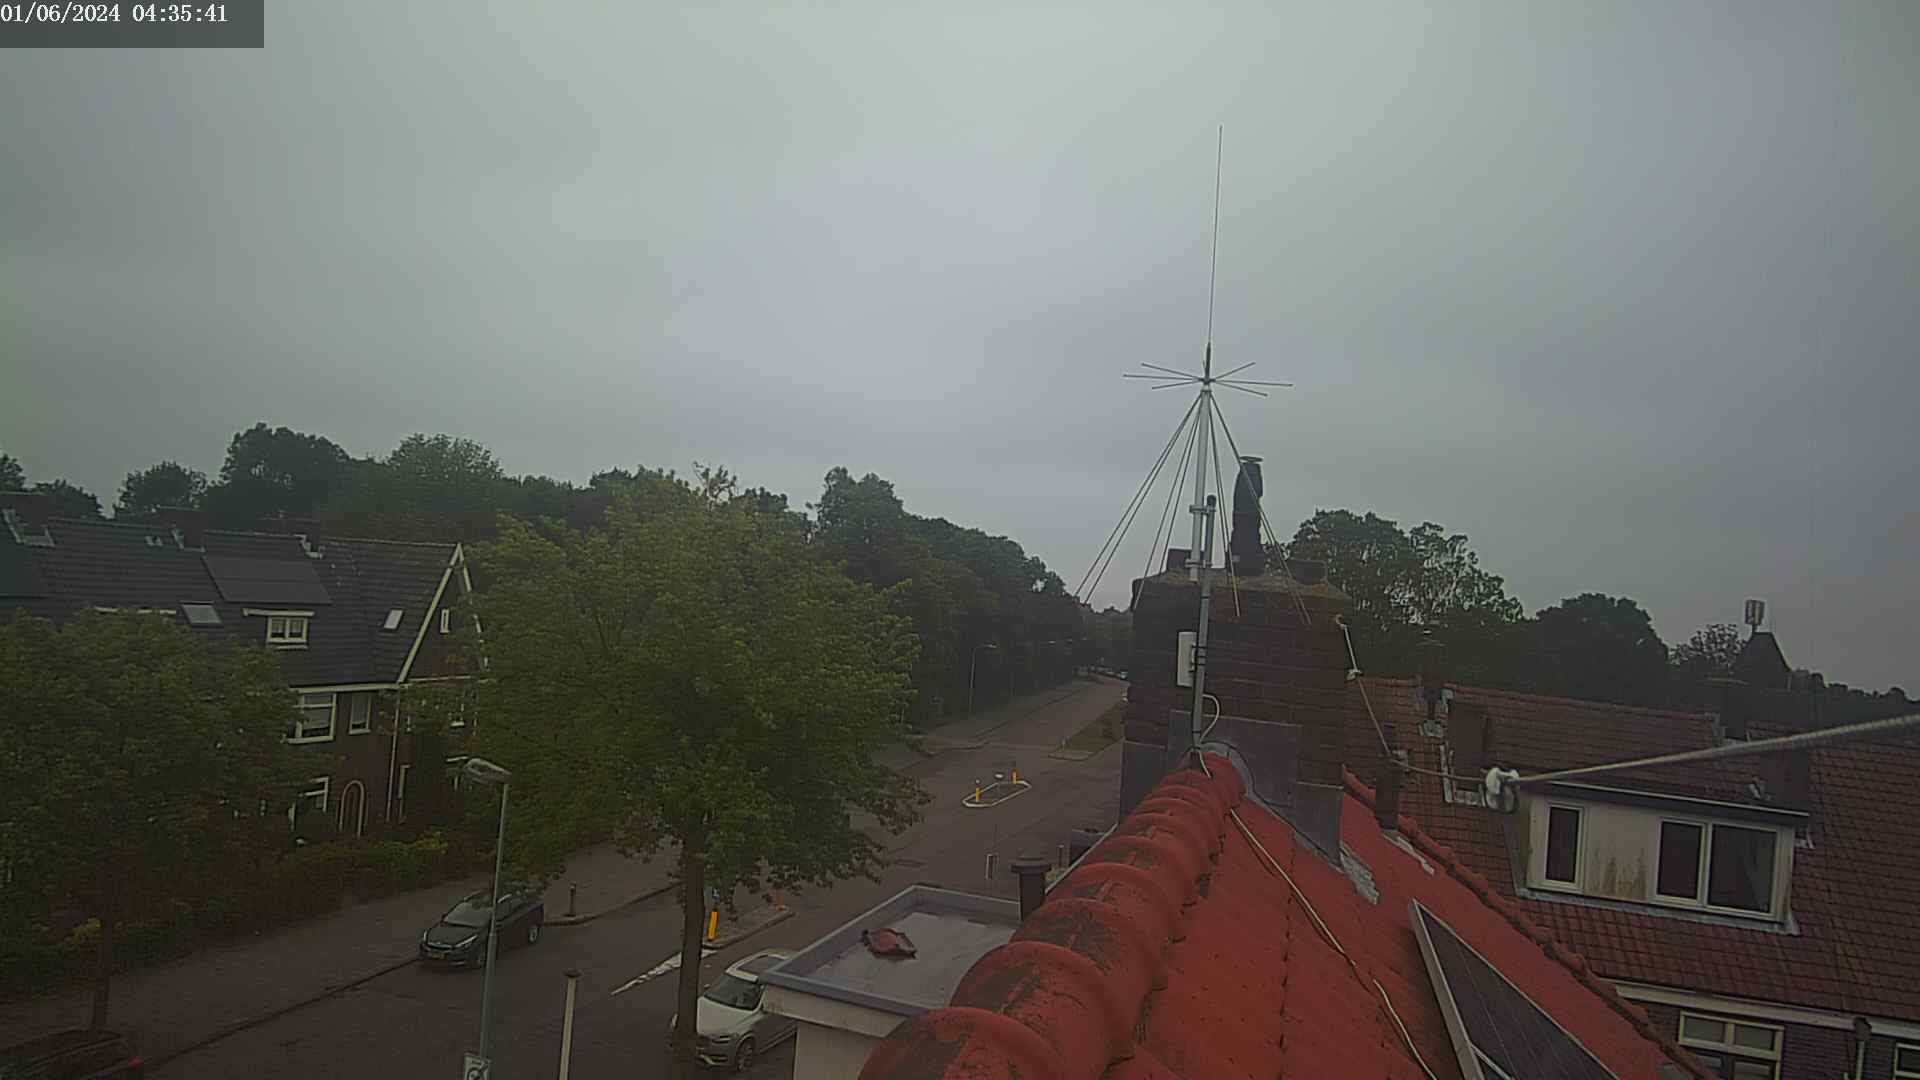 Haarlem Mi. 05:35